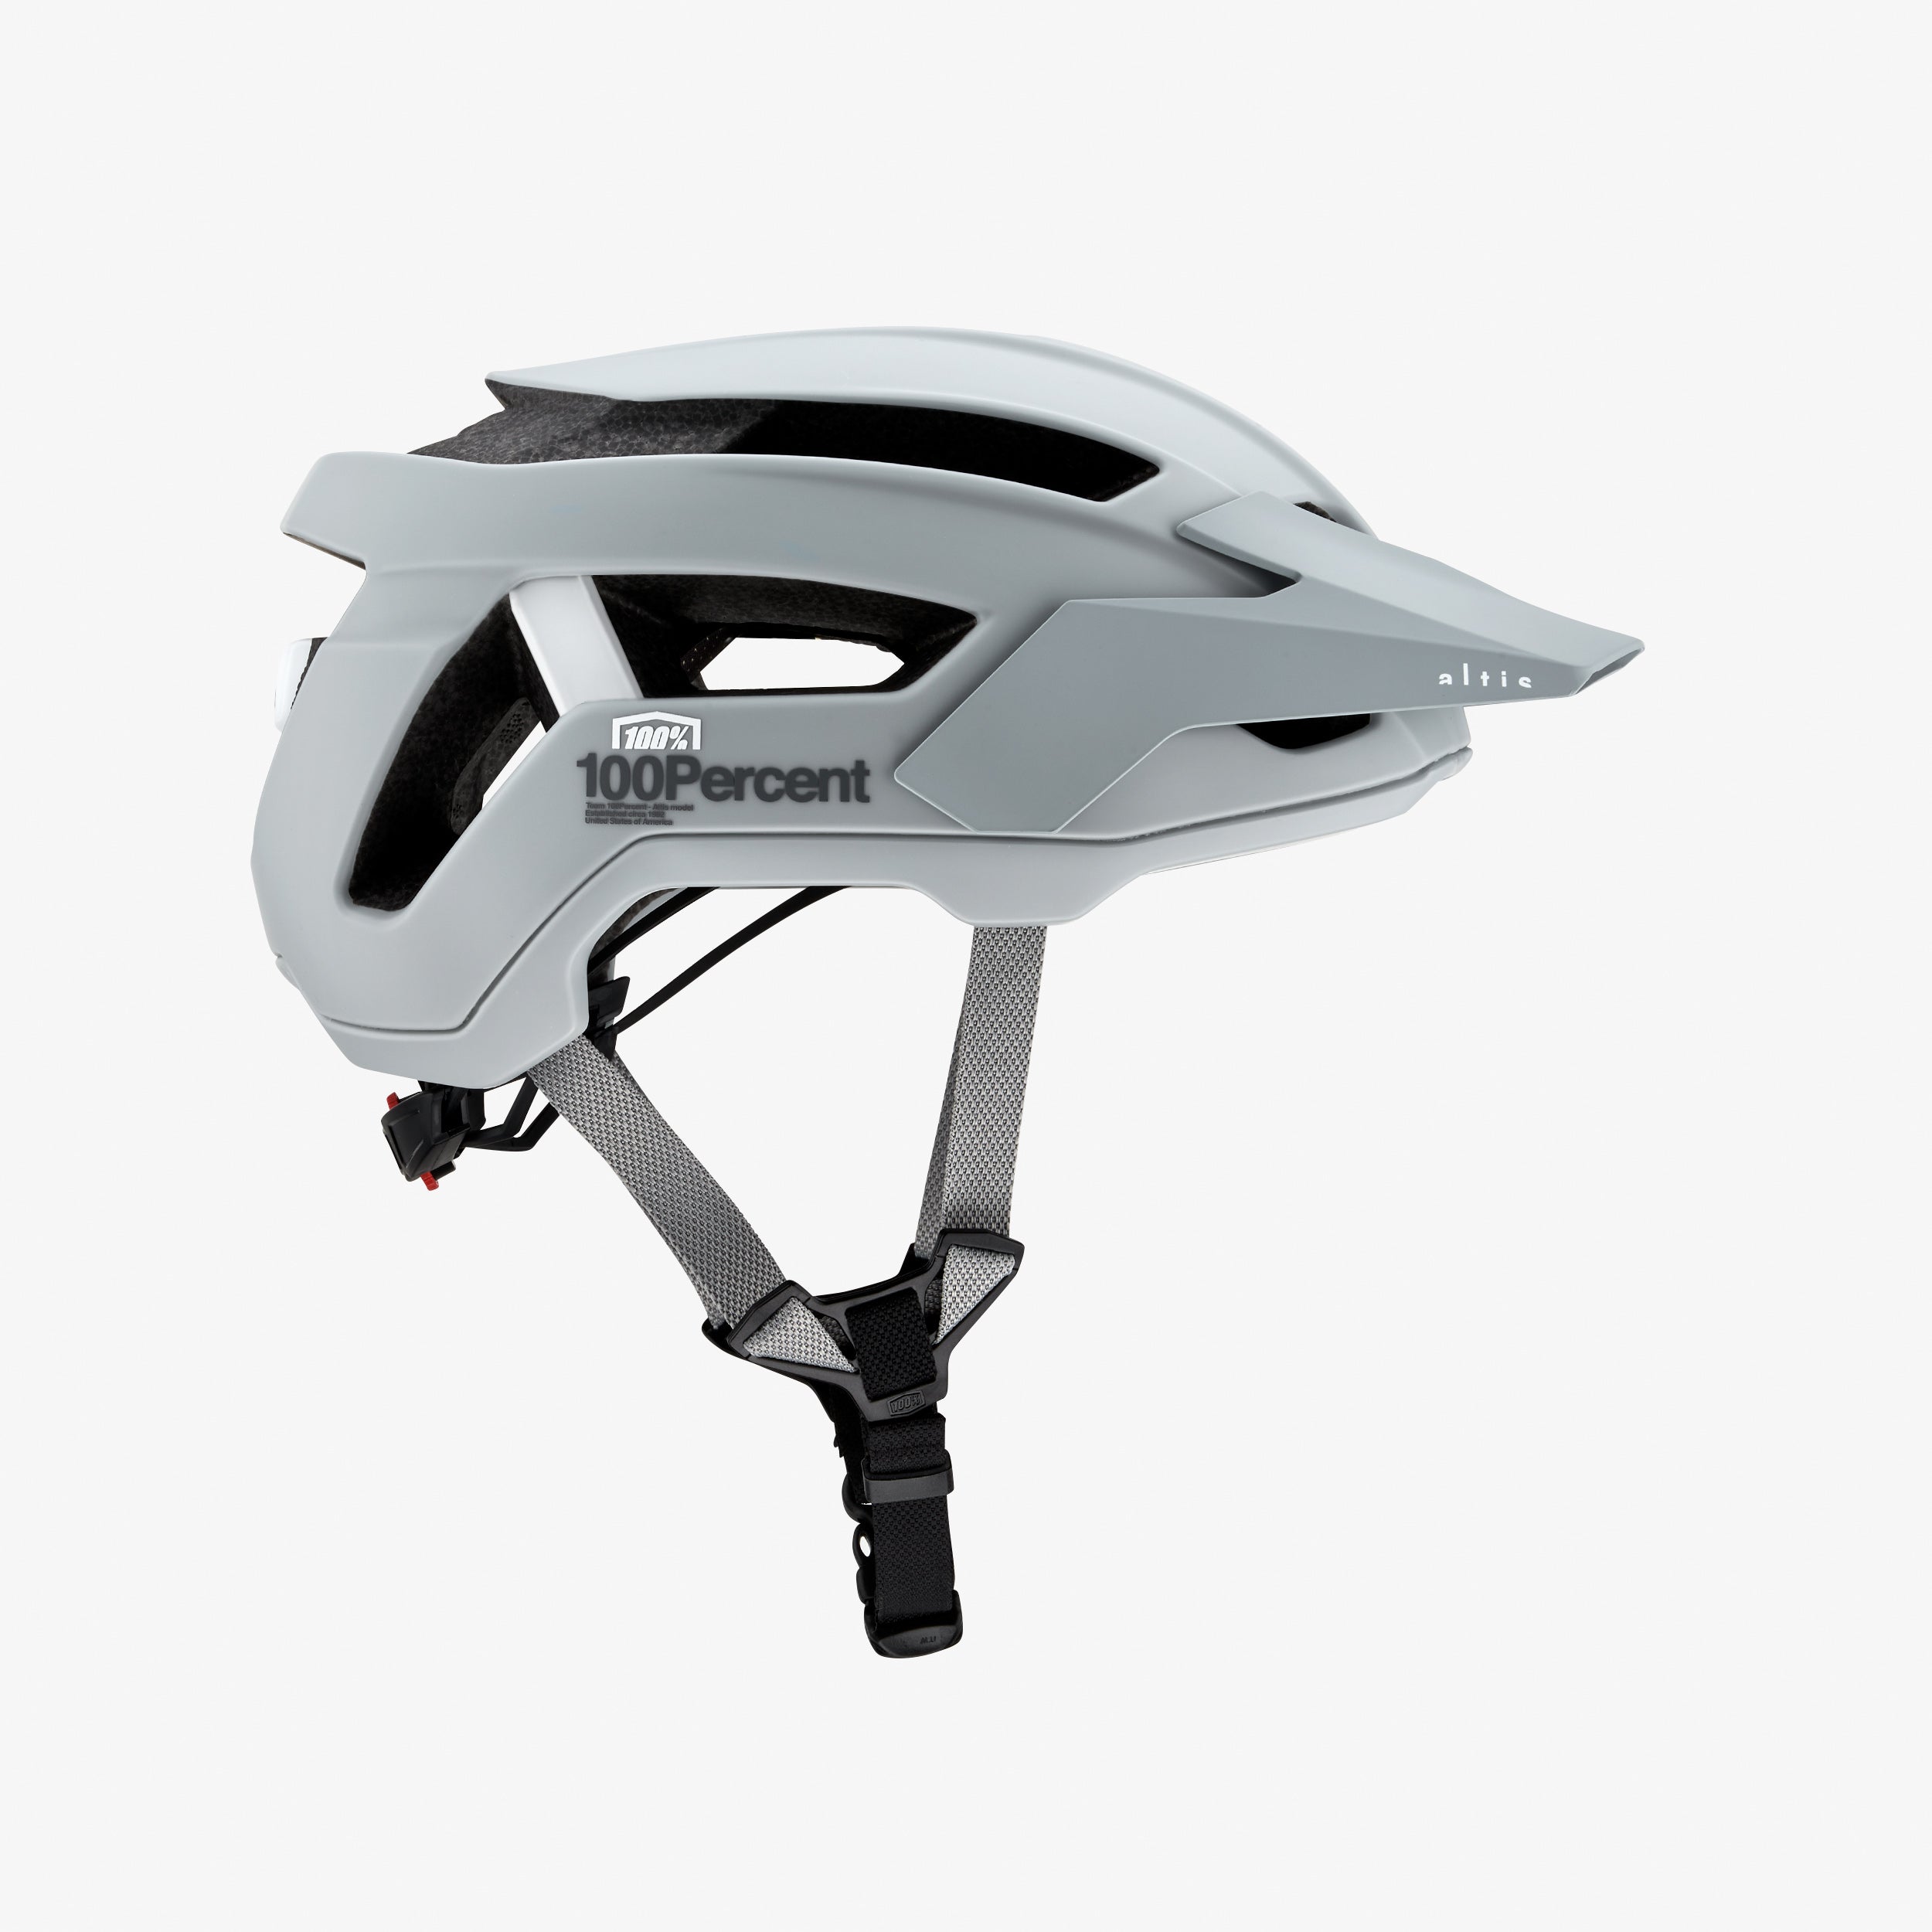 ALTIS Helmet Grey CPSC/CE